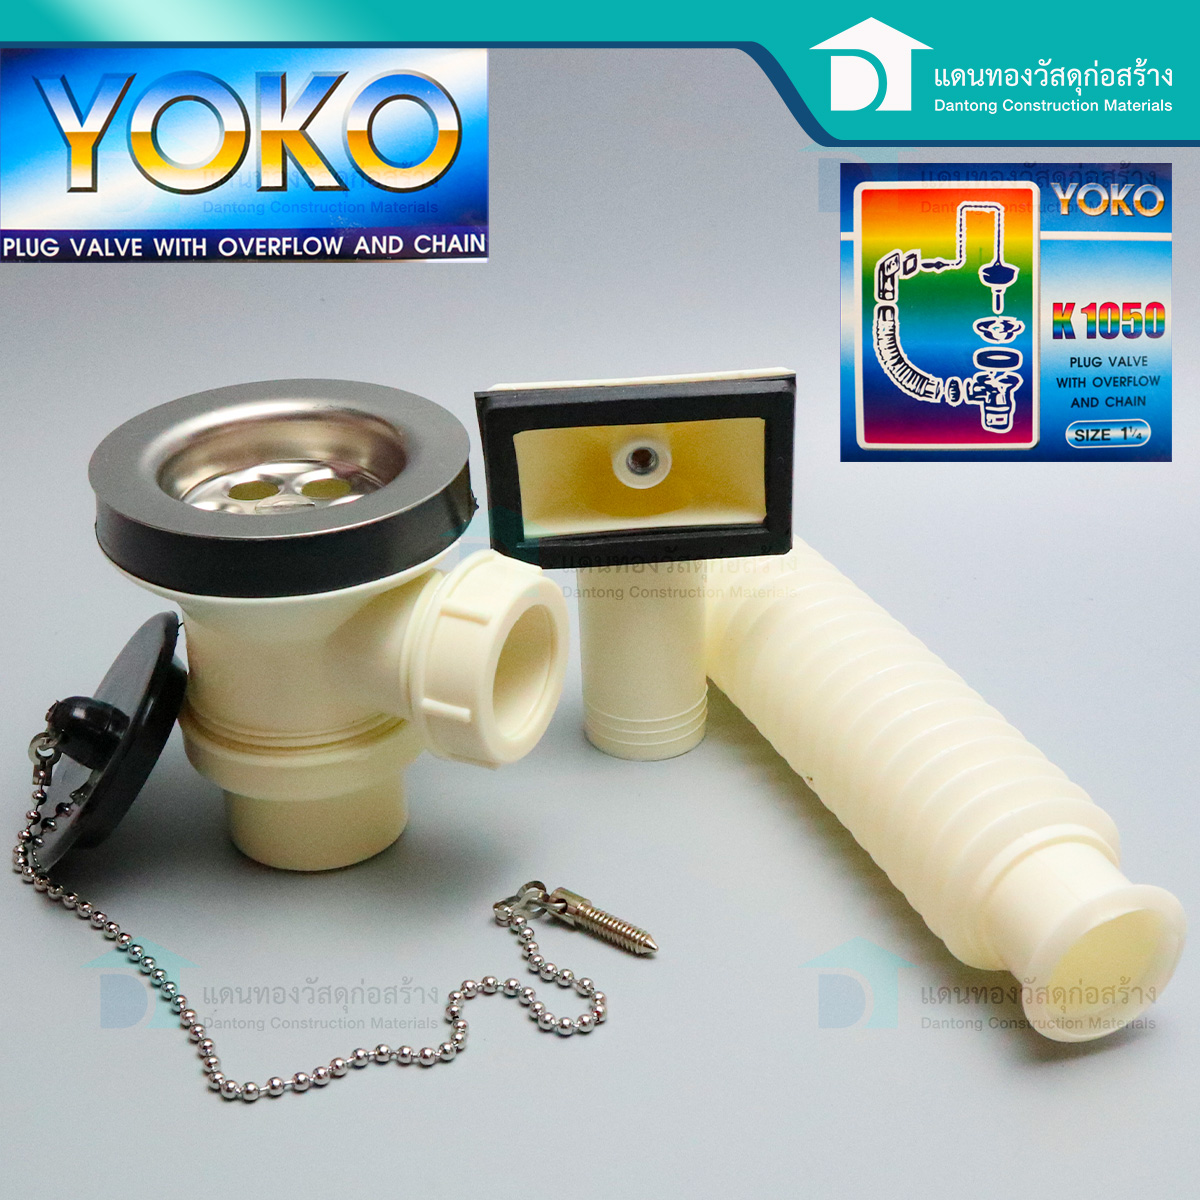 YOKO สะดืออ่างซิงค์ PVC แบบมีกันน้ำล้น อ่างล้างจาน สะดืออ่างซิงค์ล้างจานพลาสติก รุ่นหลุมเล็ก สีขาว